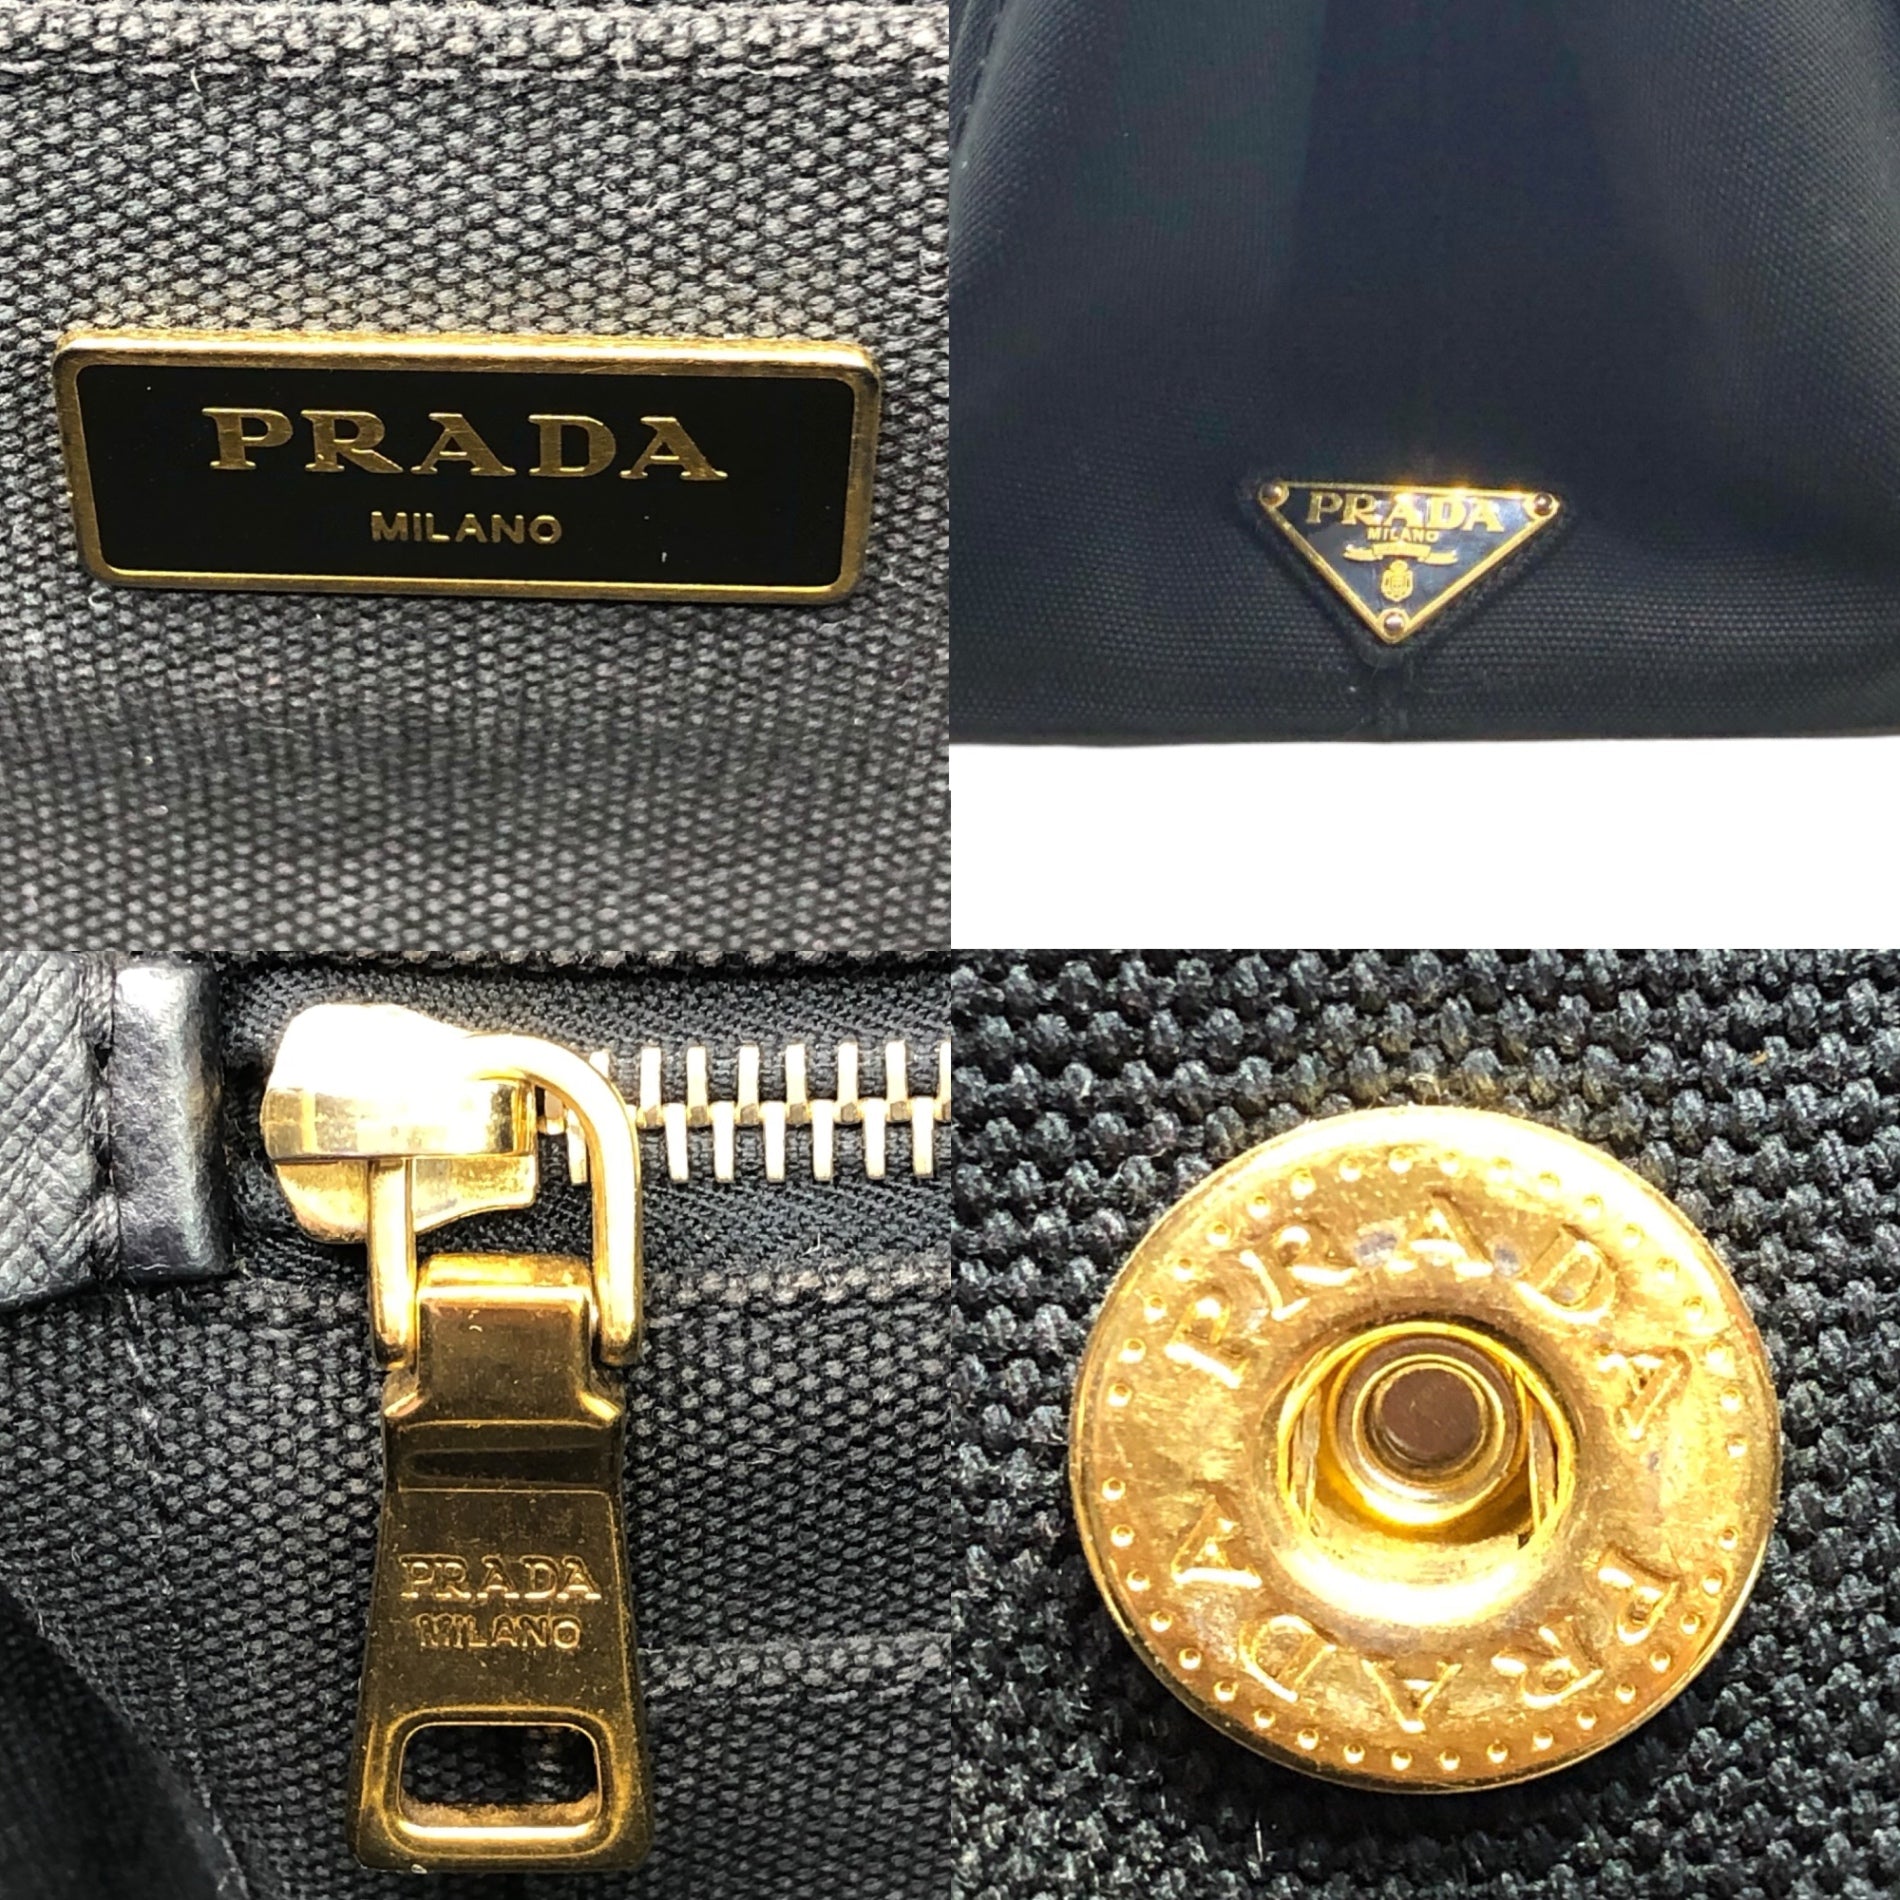 PRADA(プラダ) panama bag パナマ バッグ ブラック 204 キャンバス トート ハンド バッグ